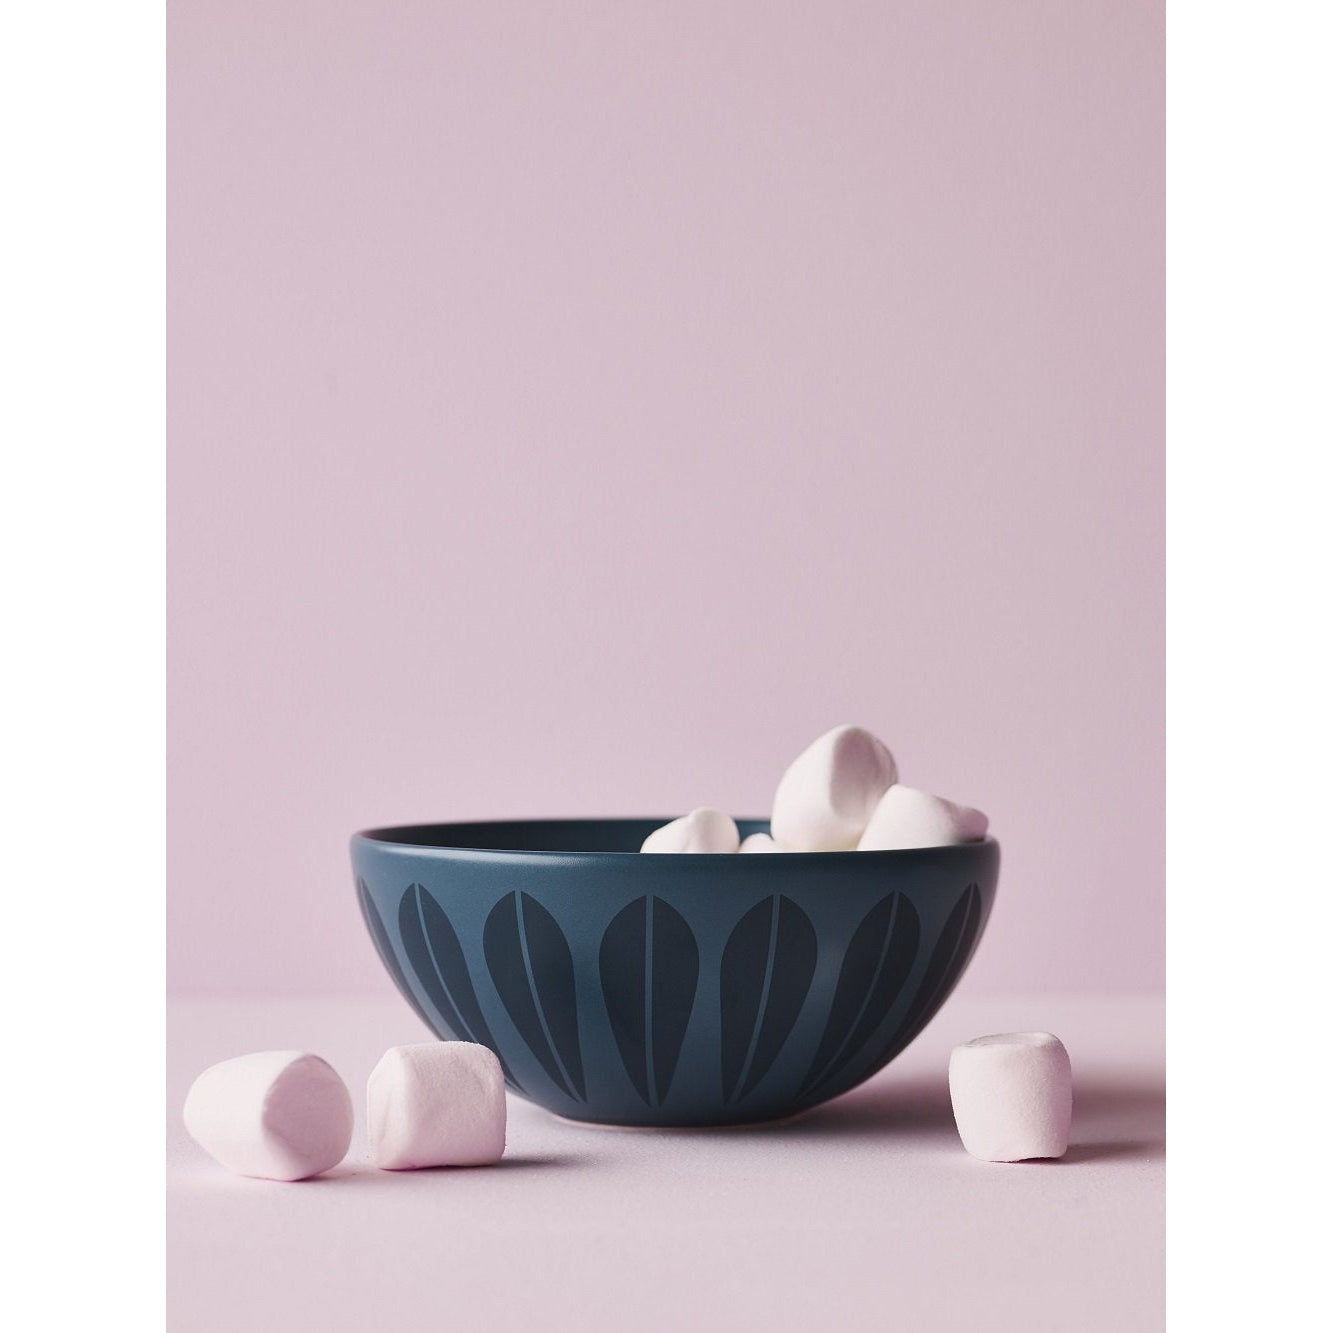 Lucie Kaas Arne Clausen Sugar Bowl, Mint